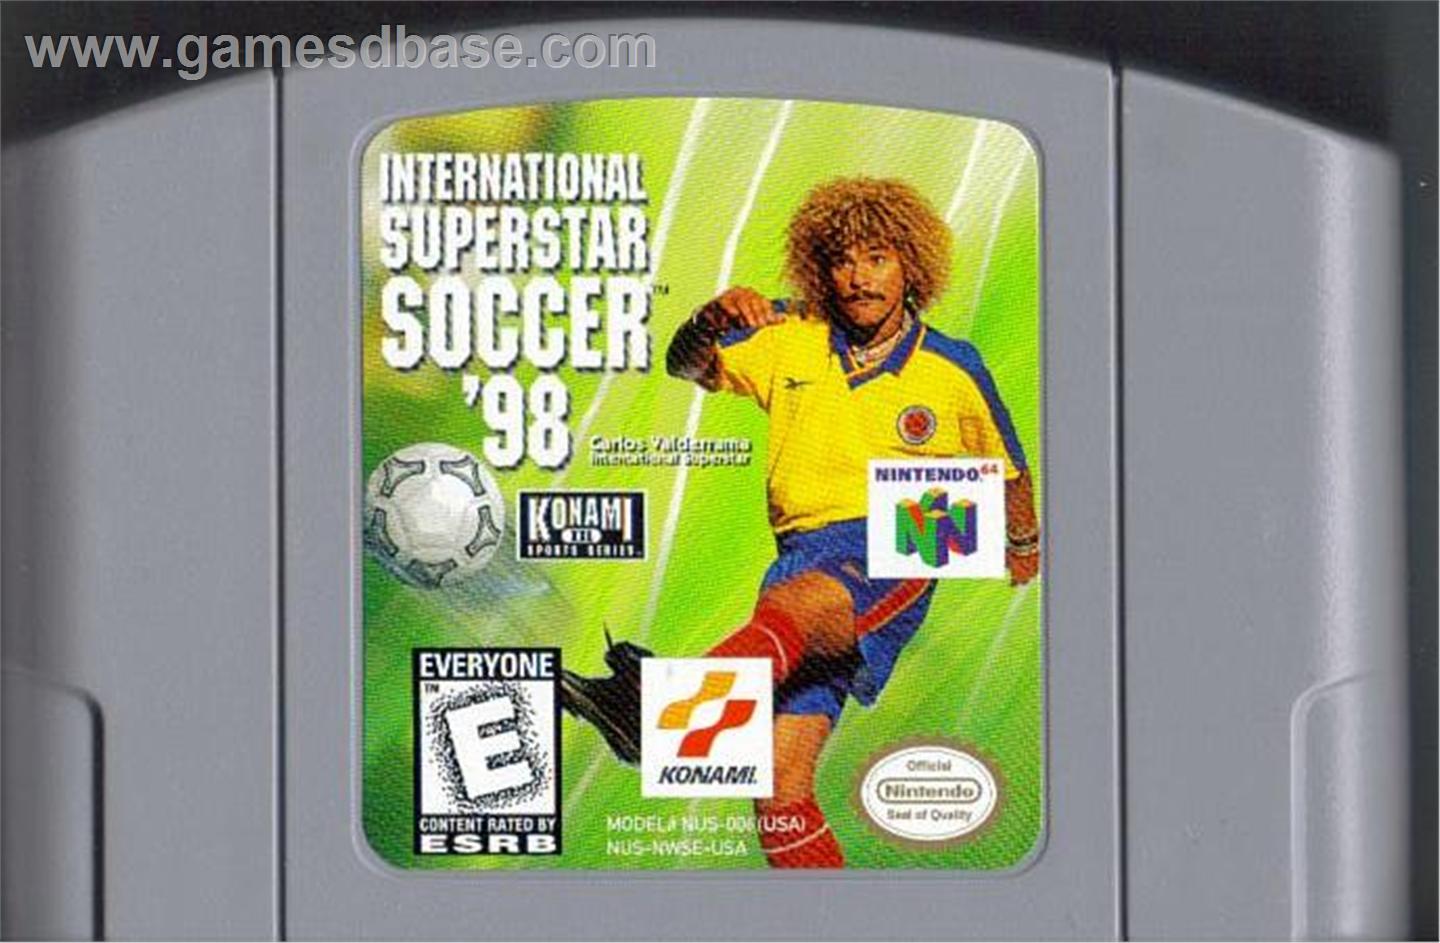 International Superstar Soccer 98 N64 Mp3 Download International Superstar Soccer 98 N64 Soundtracks For Free